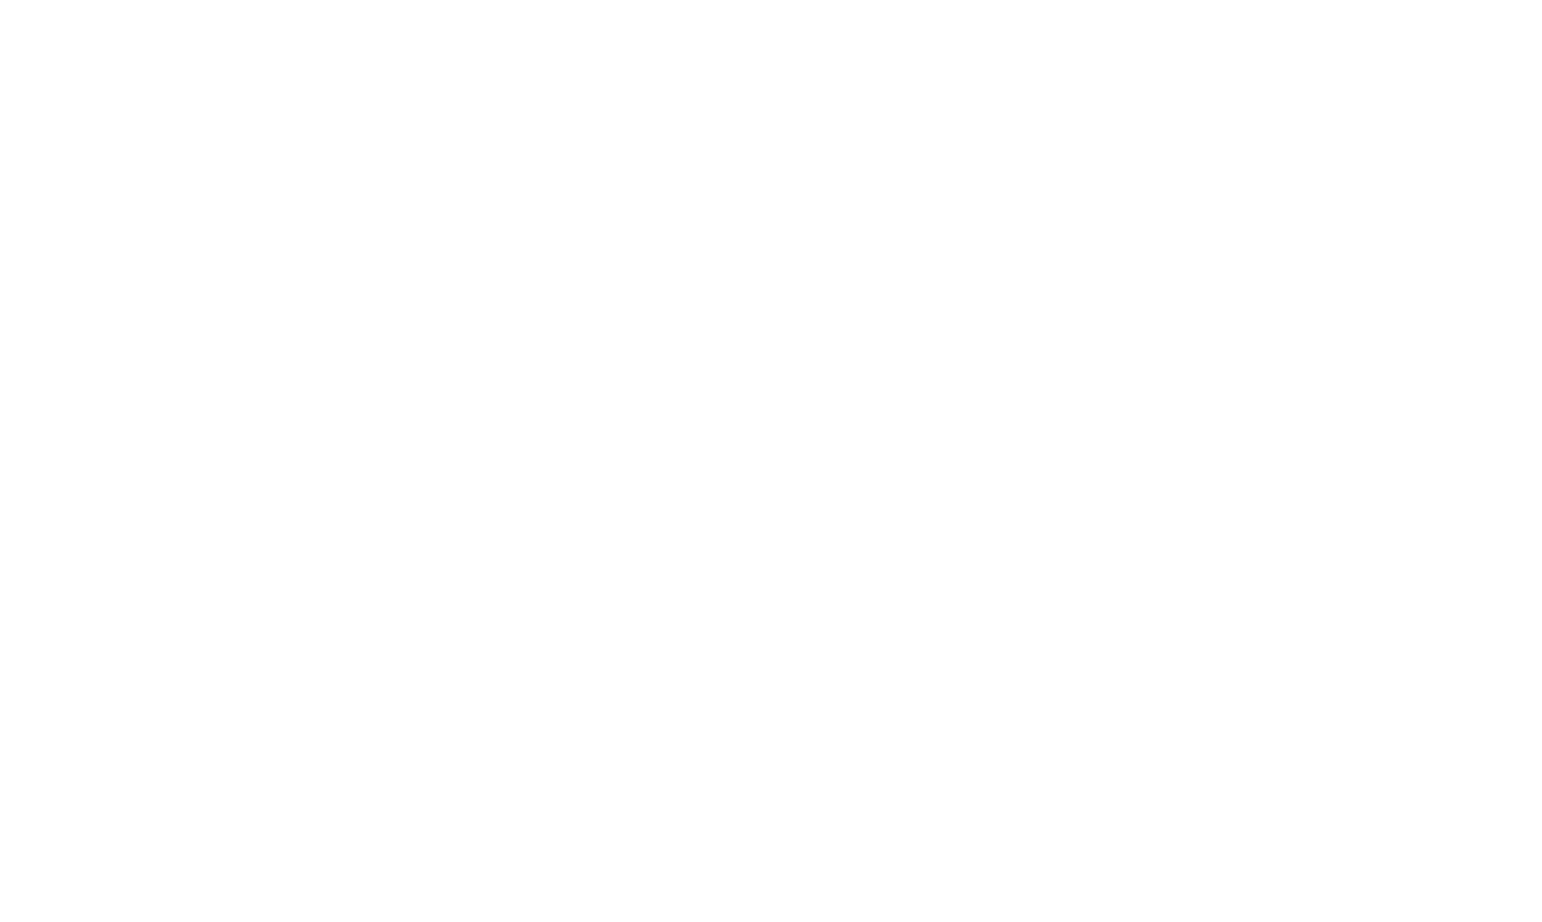 Cross River Bank logo for dark backgrounds (transparent PNG)